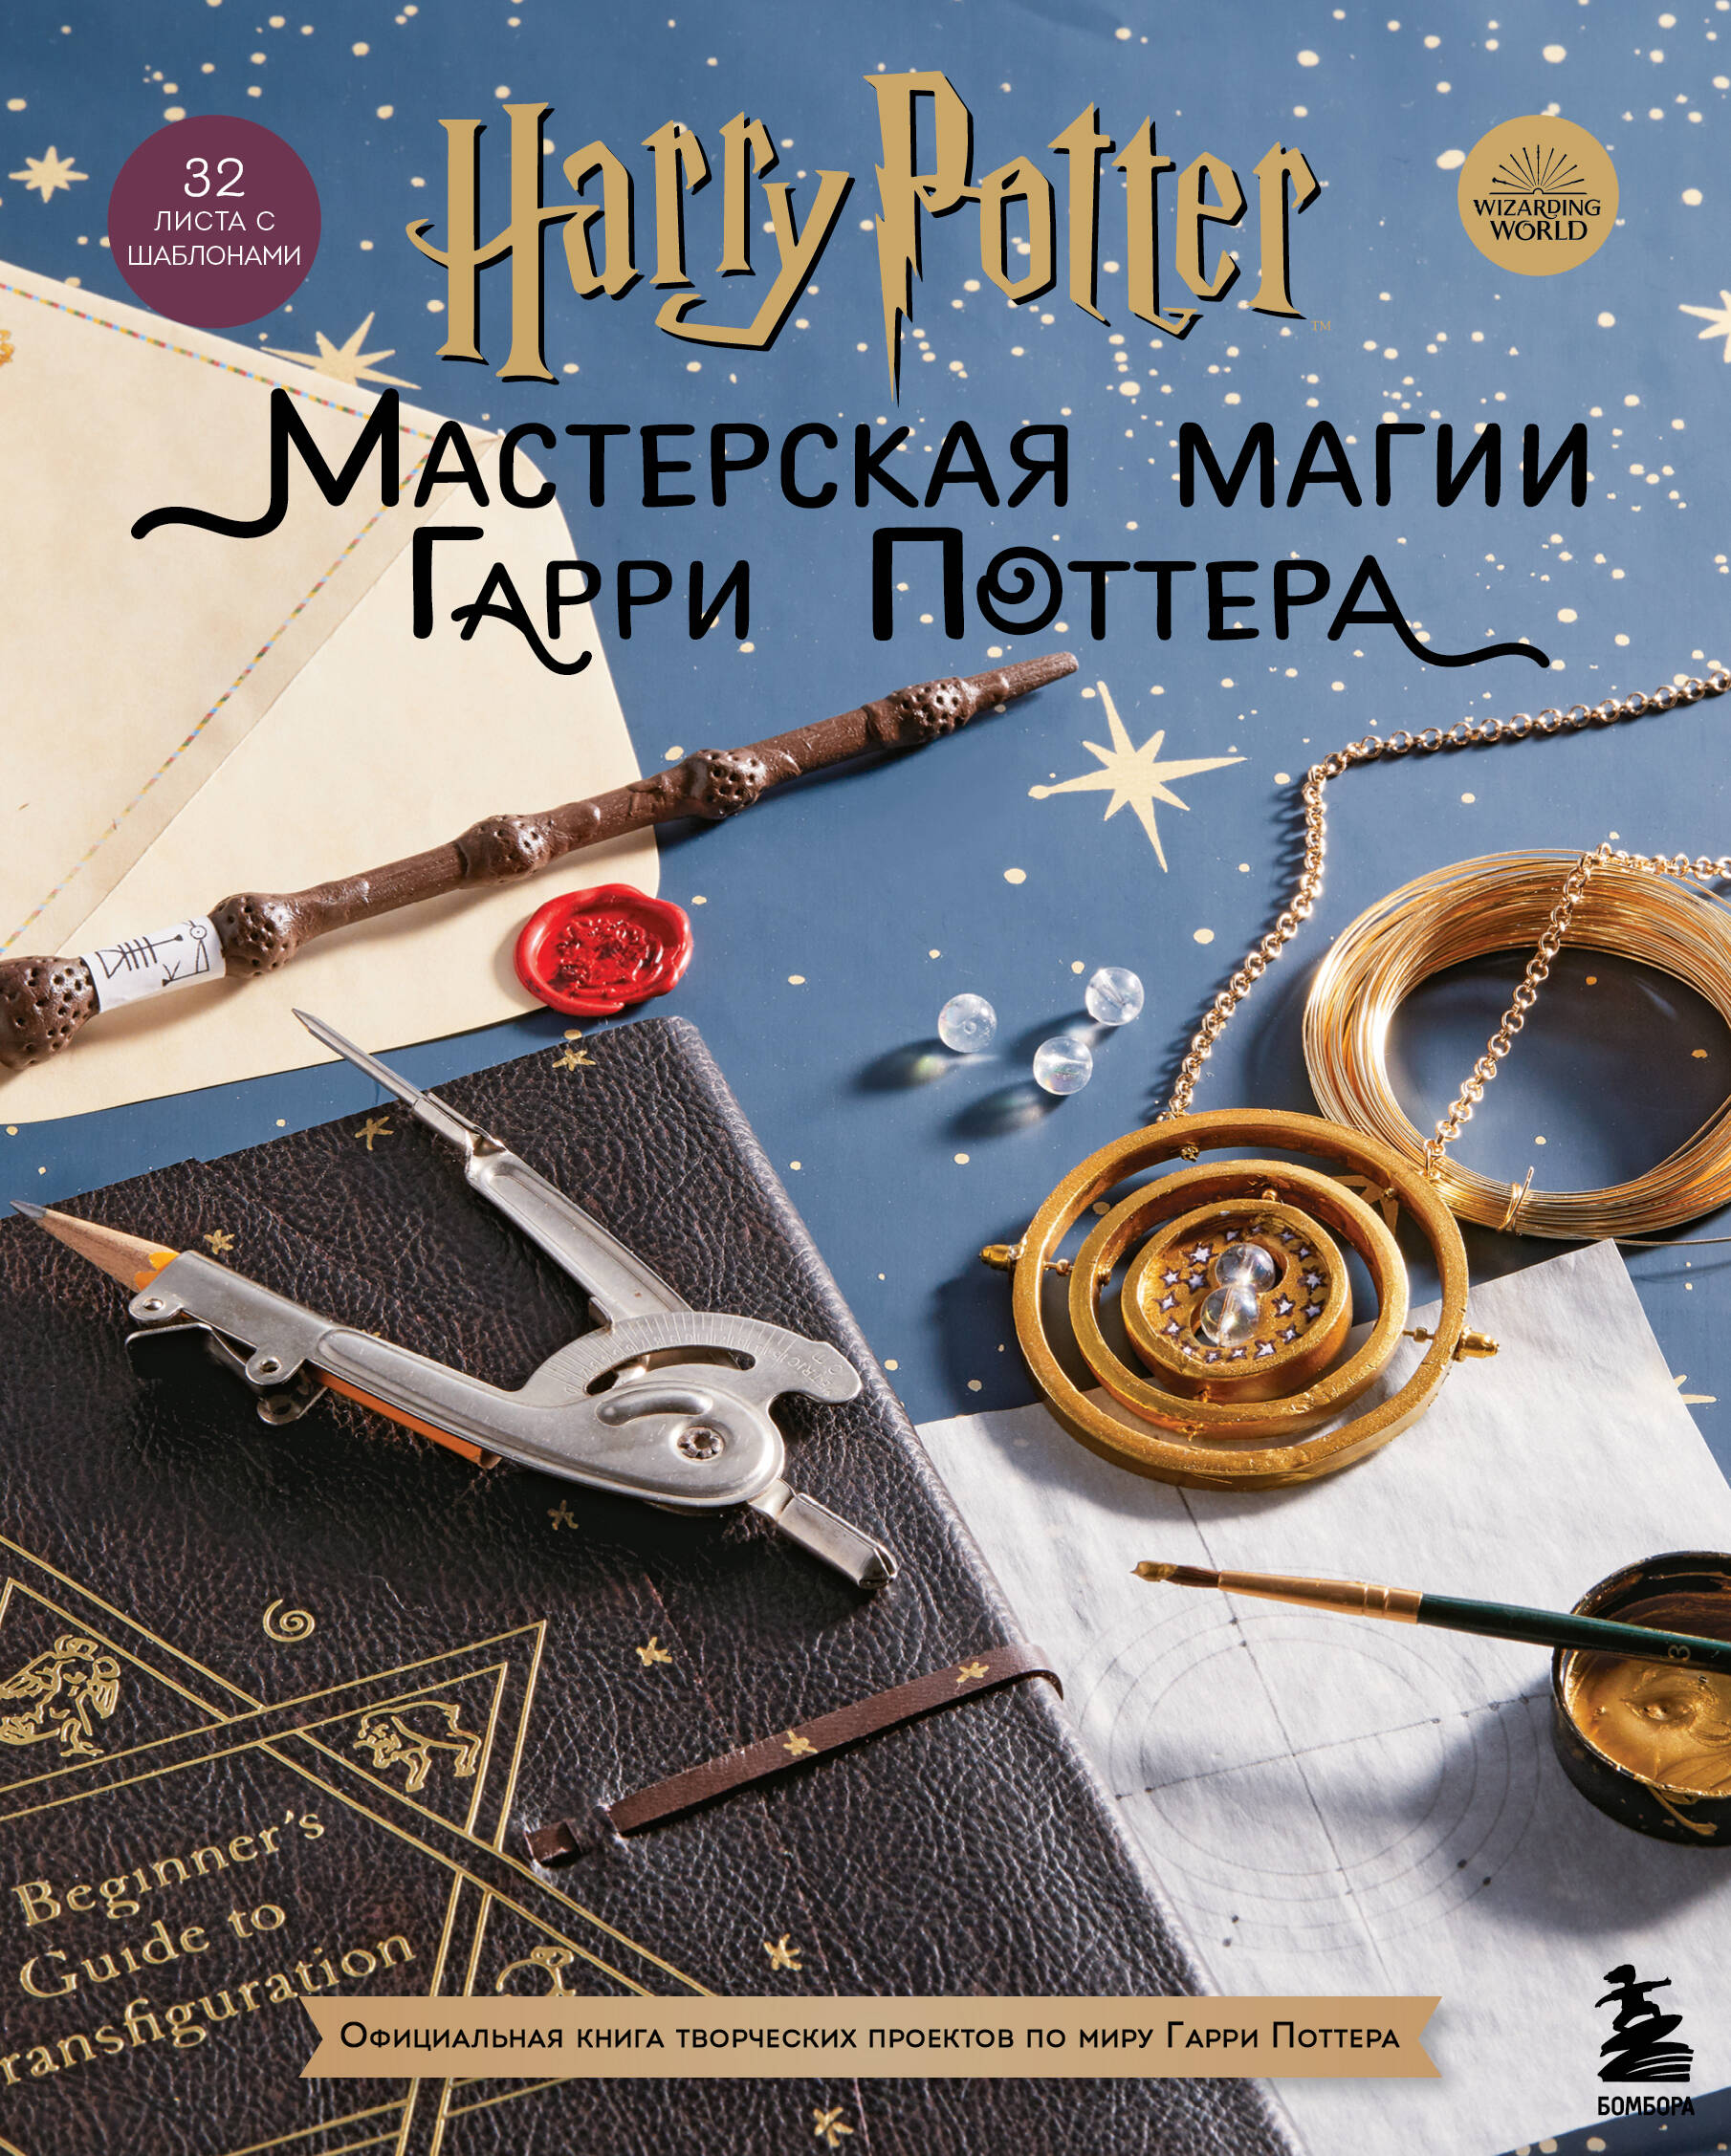 harry potter мастерская магии гарри поттера официальная книга творческих проектов Harry Potter. Мастерская магии Гарри Поттера. Официальная книга творческих проектов по миру Гарри Поттера